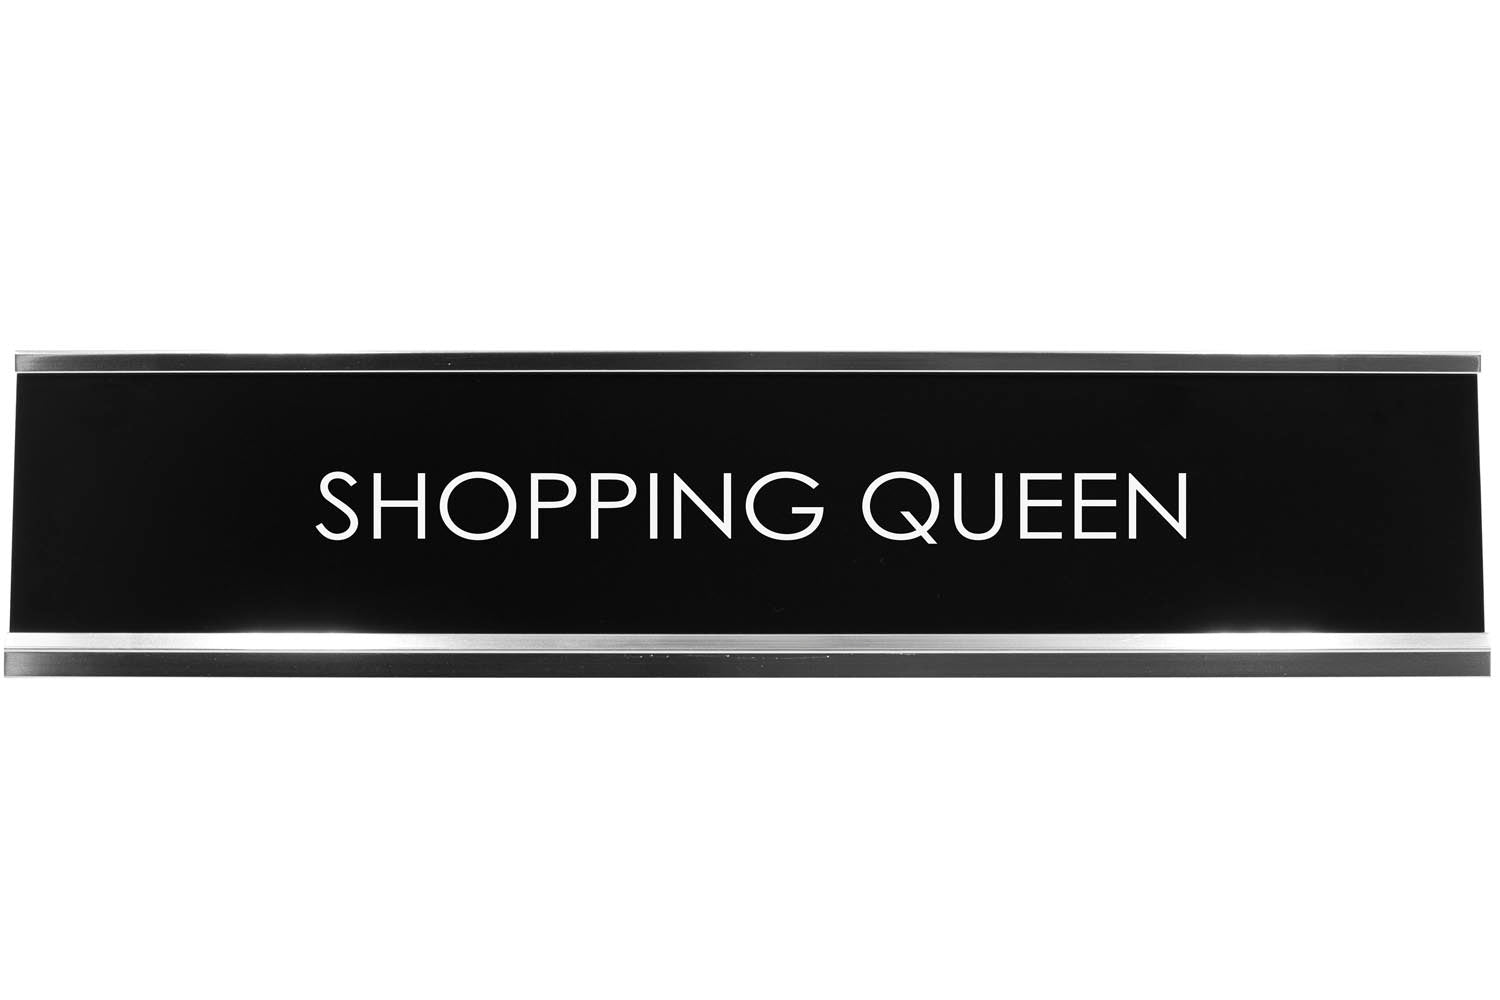 Shopping Queen Novelty Desk Sign